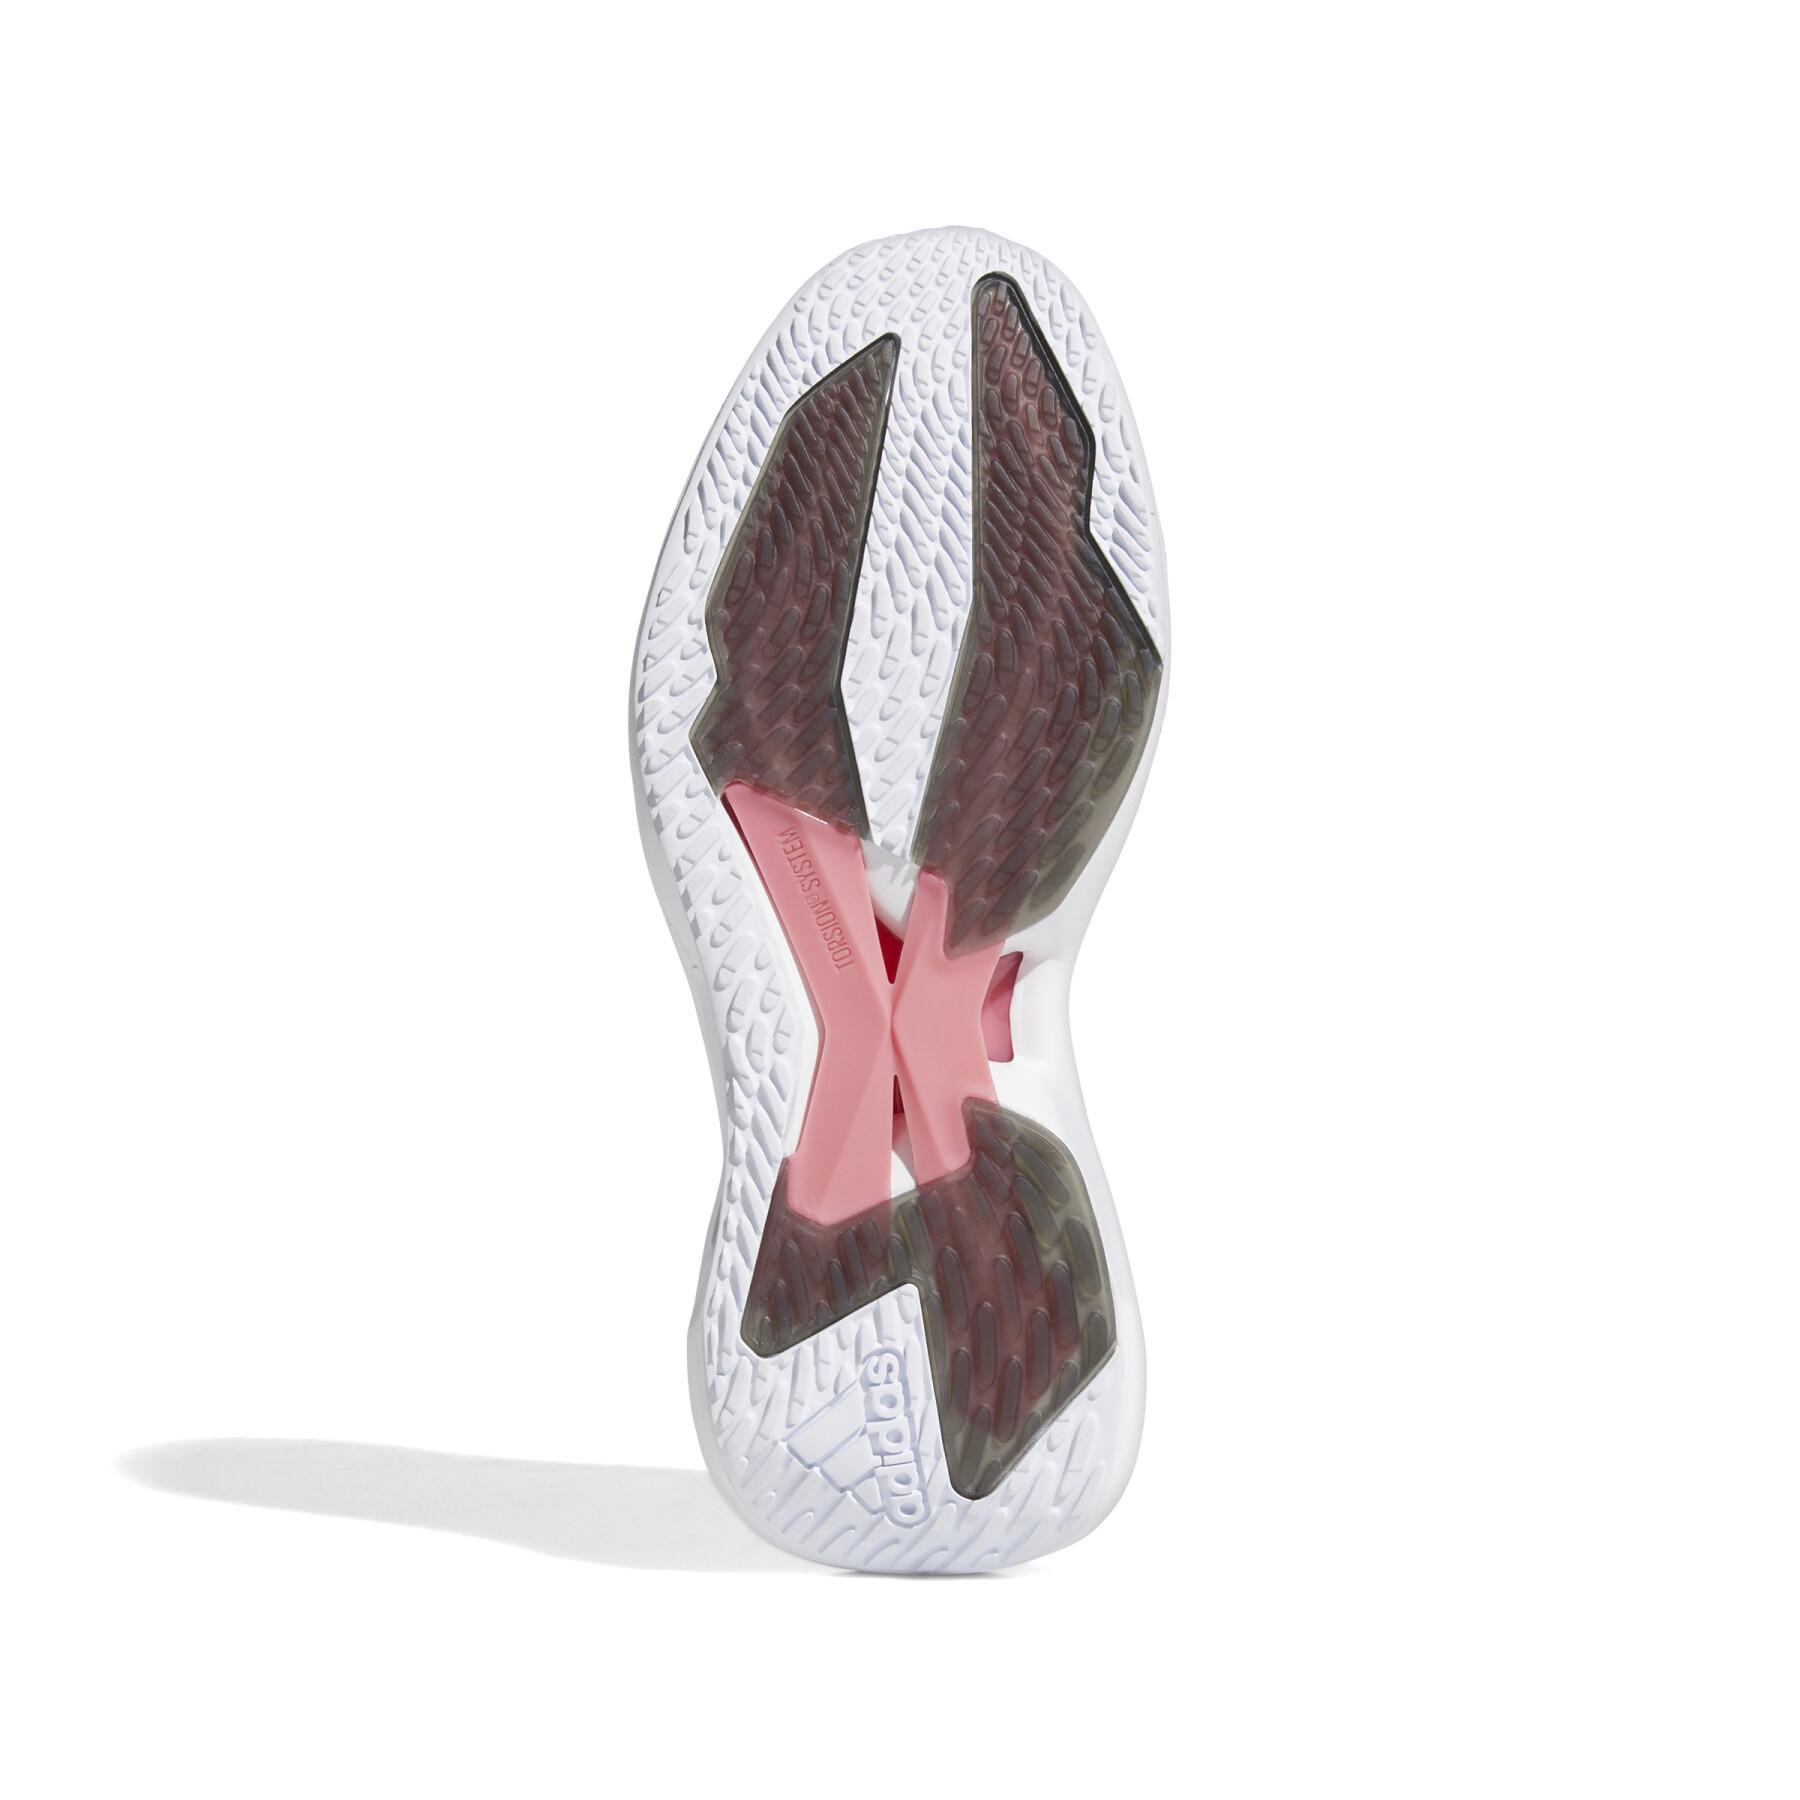 Chaussures de running femme adidas Alphatorsion 2.0